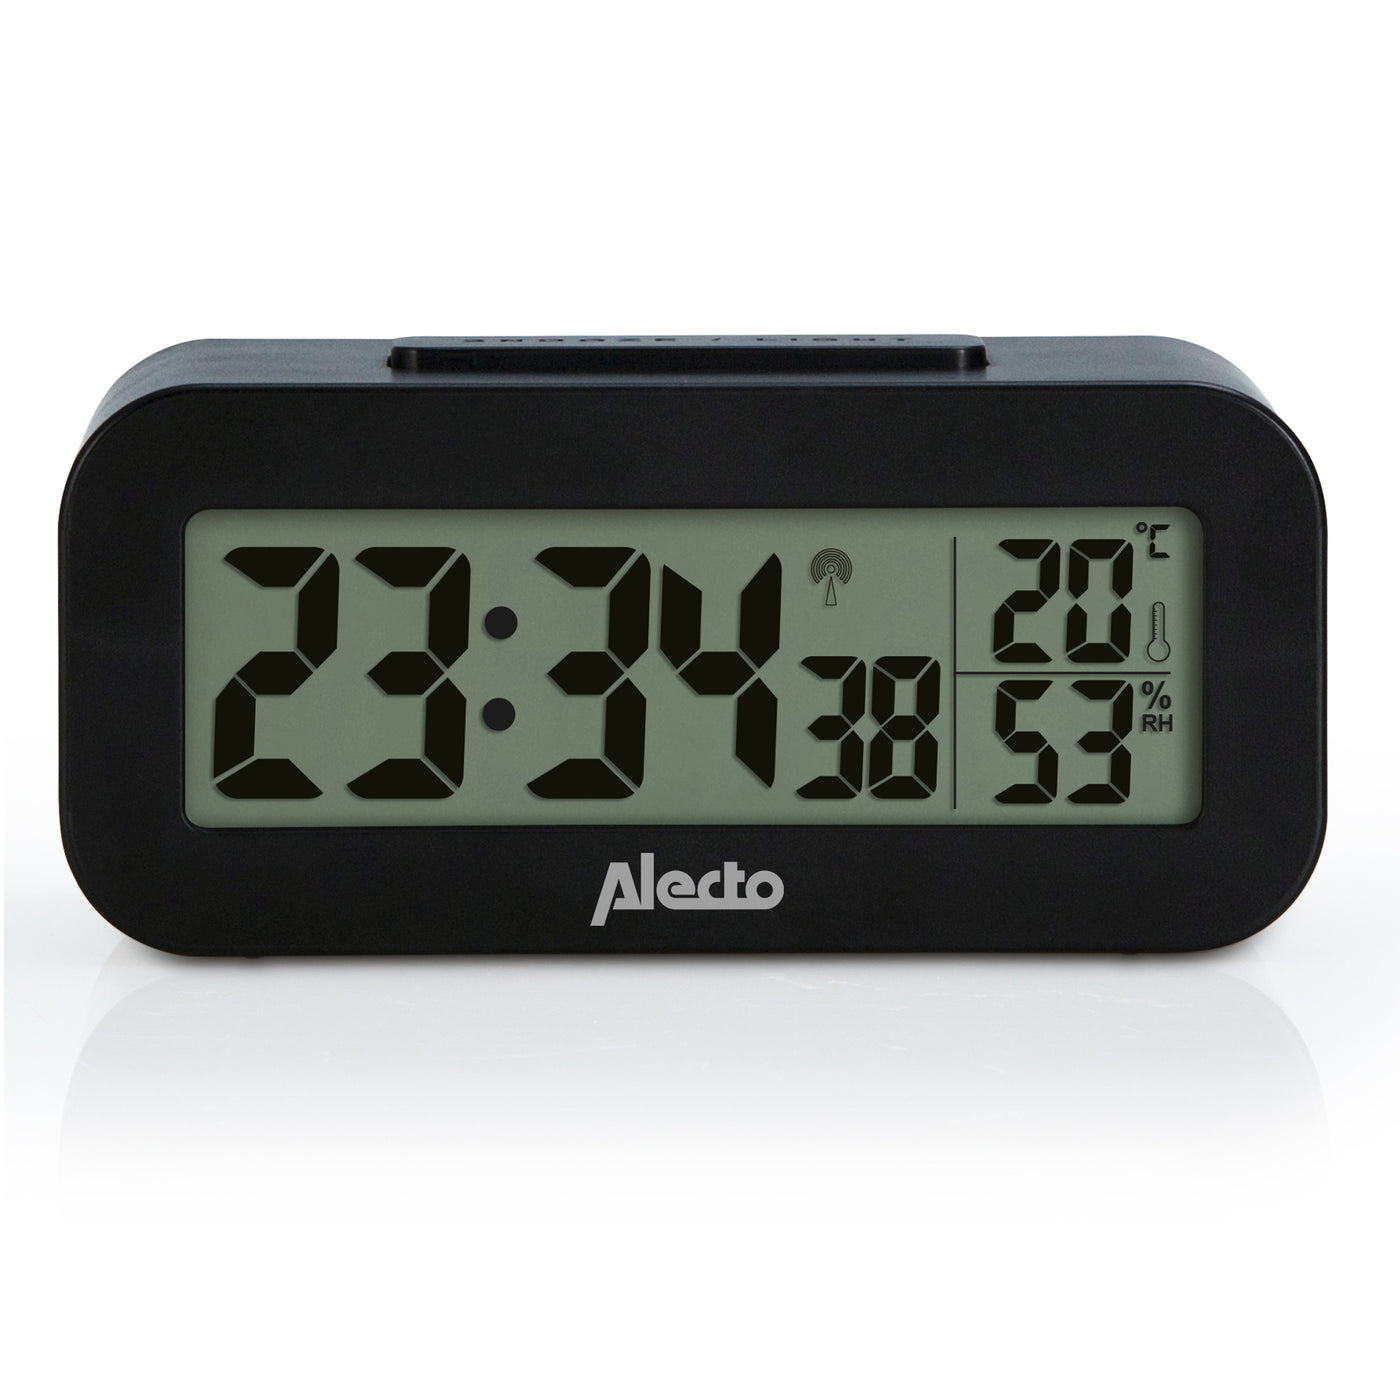 Alecto AK-30 - Digitaler Wecker mit Thermometer und Hygrometer, schwarz